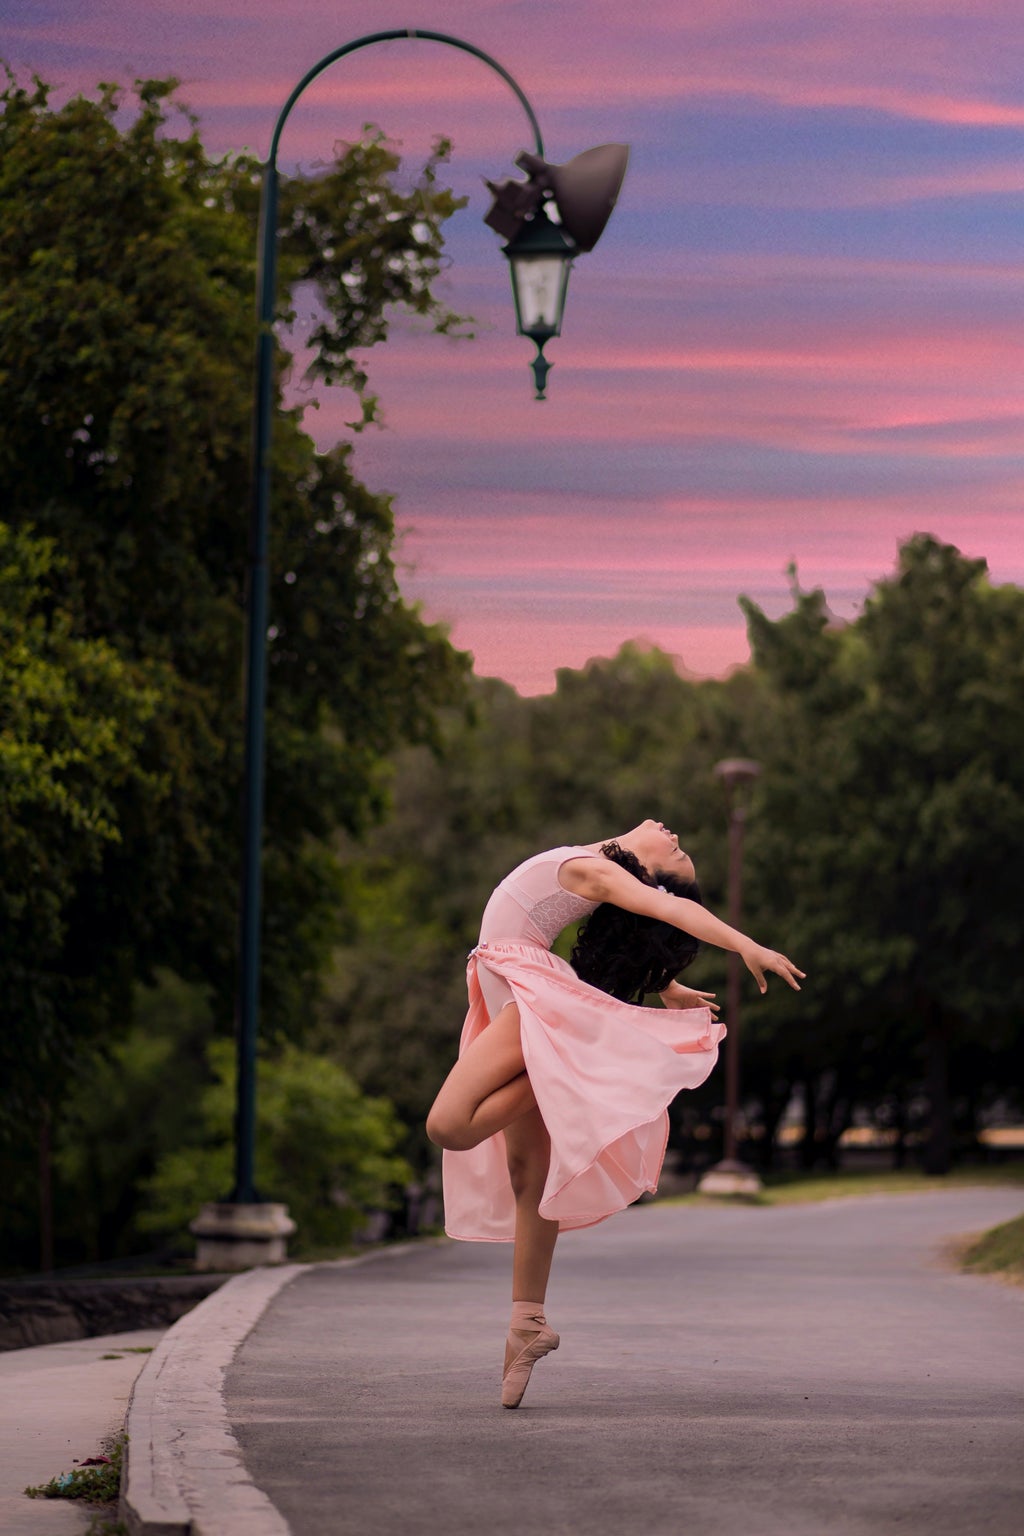 Ballet dancer on road beside streetlamp during sunset